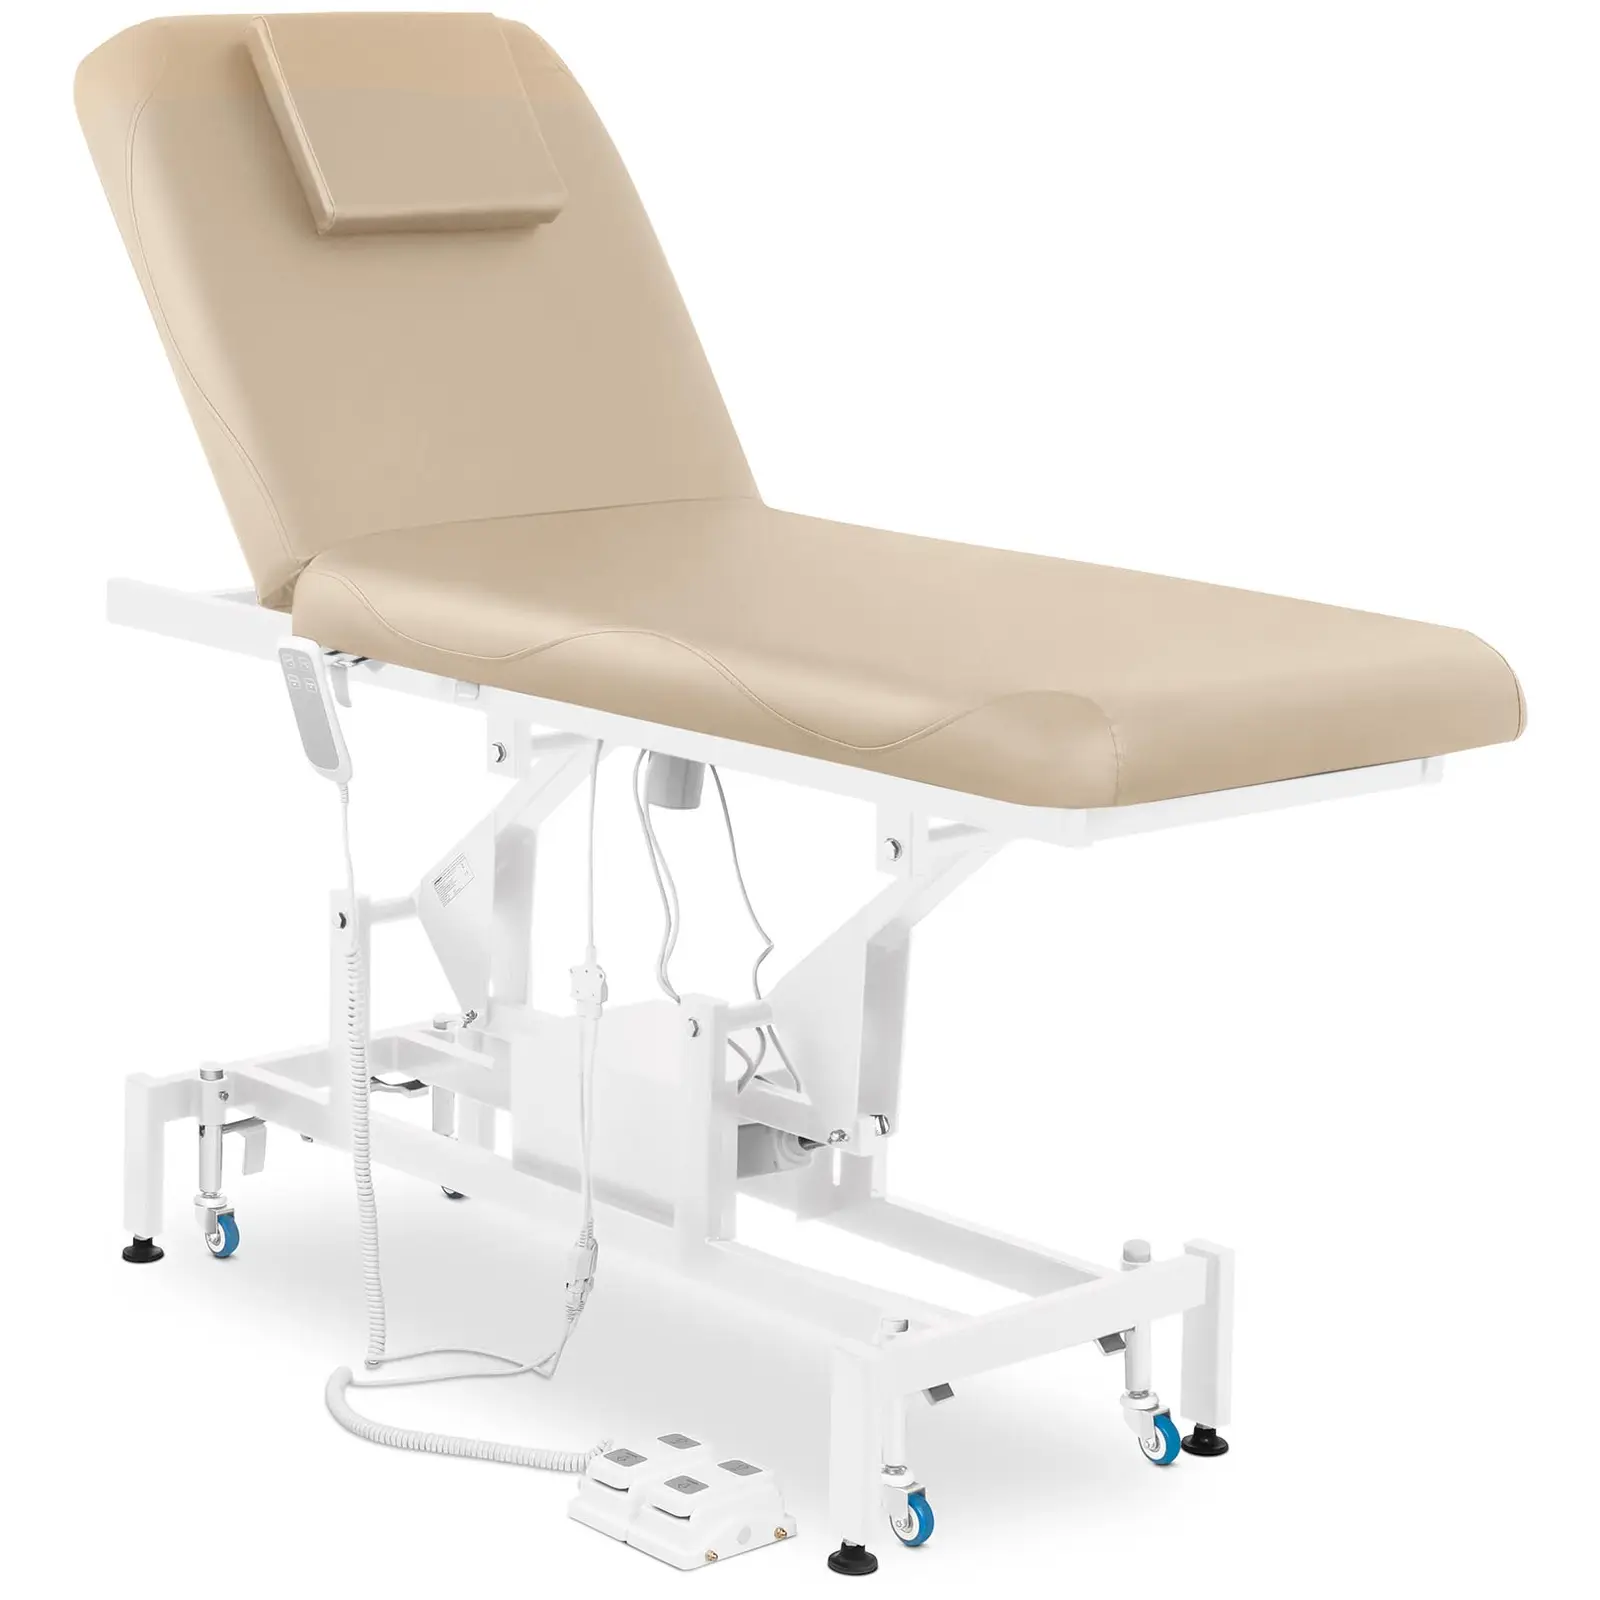 Table de massage - électrique - 100 W - 150 kg - Beige